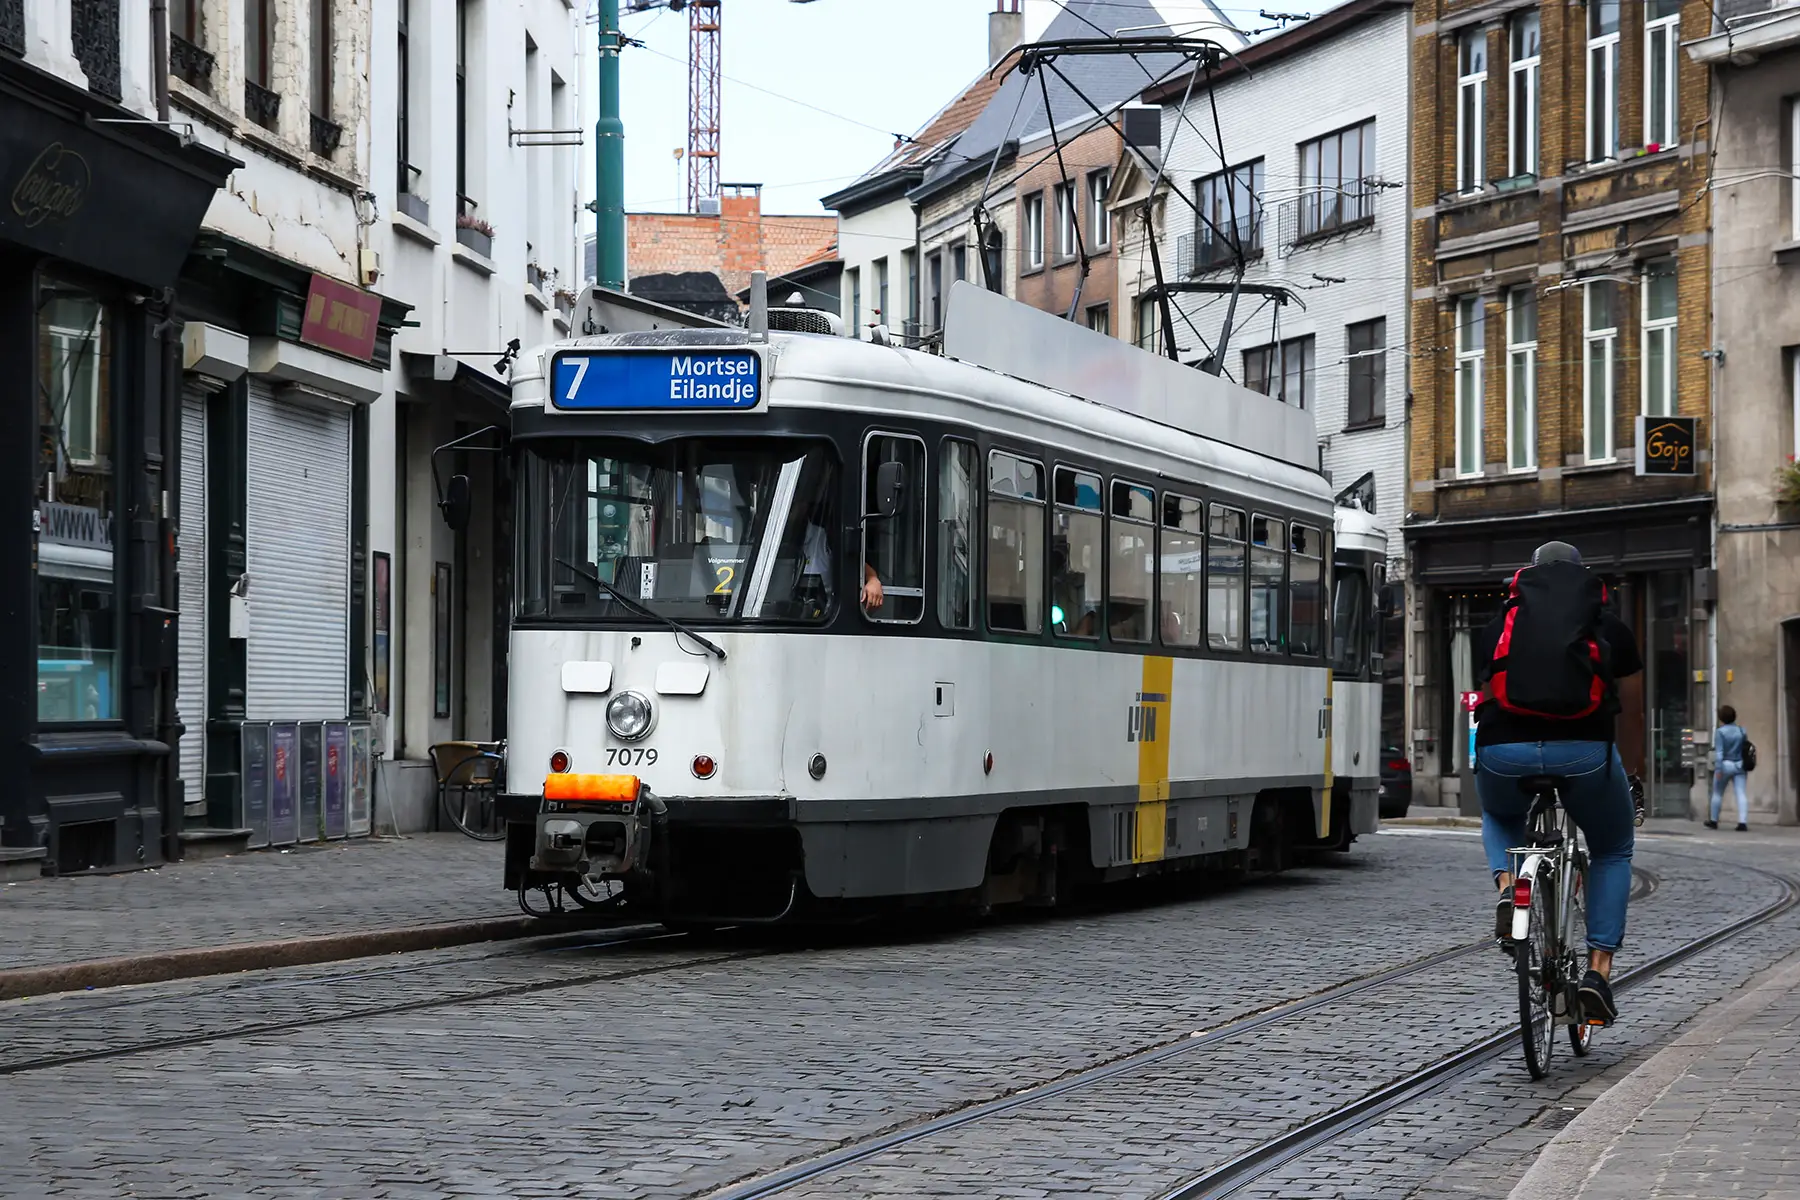 A tram in Antwerp